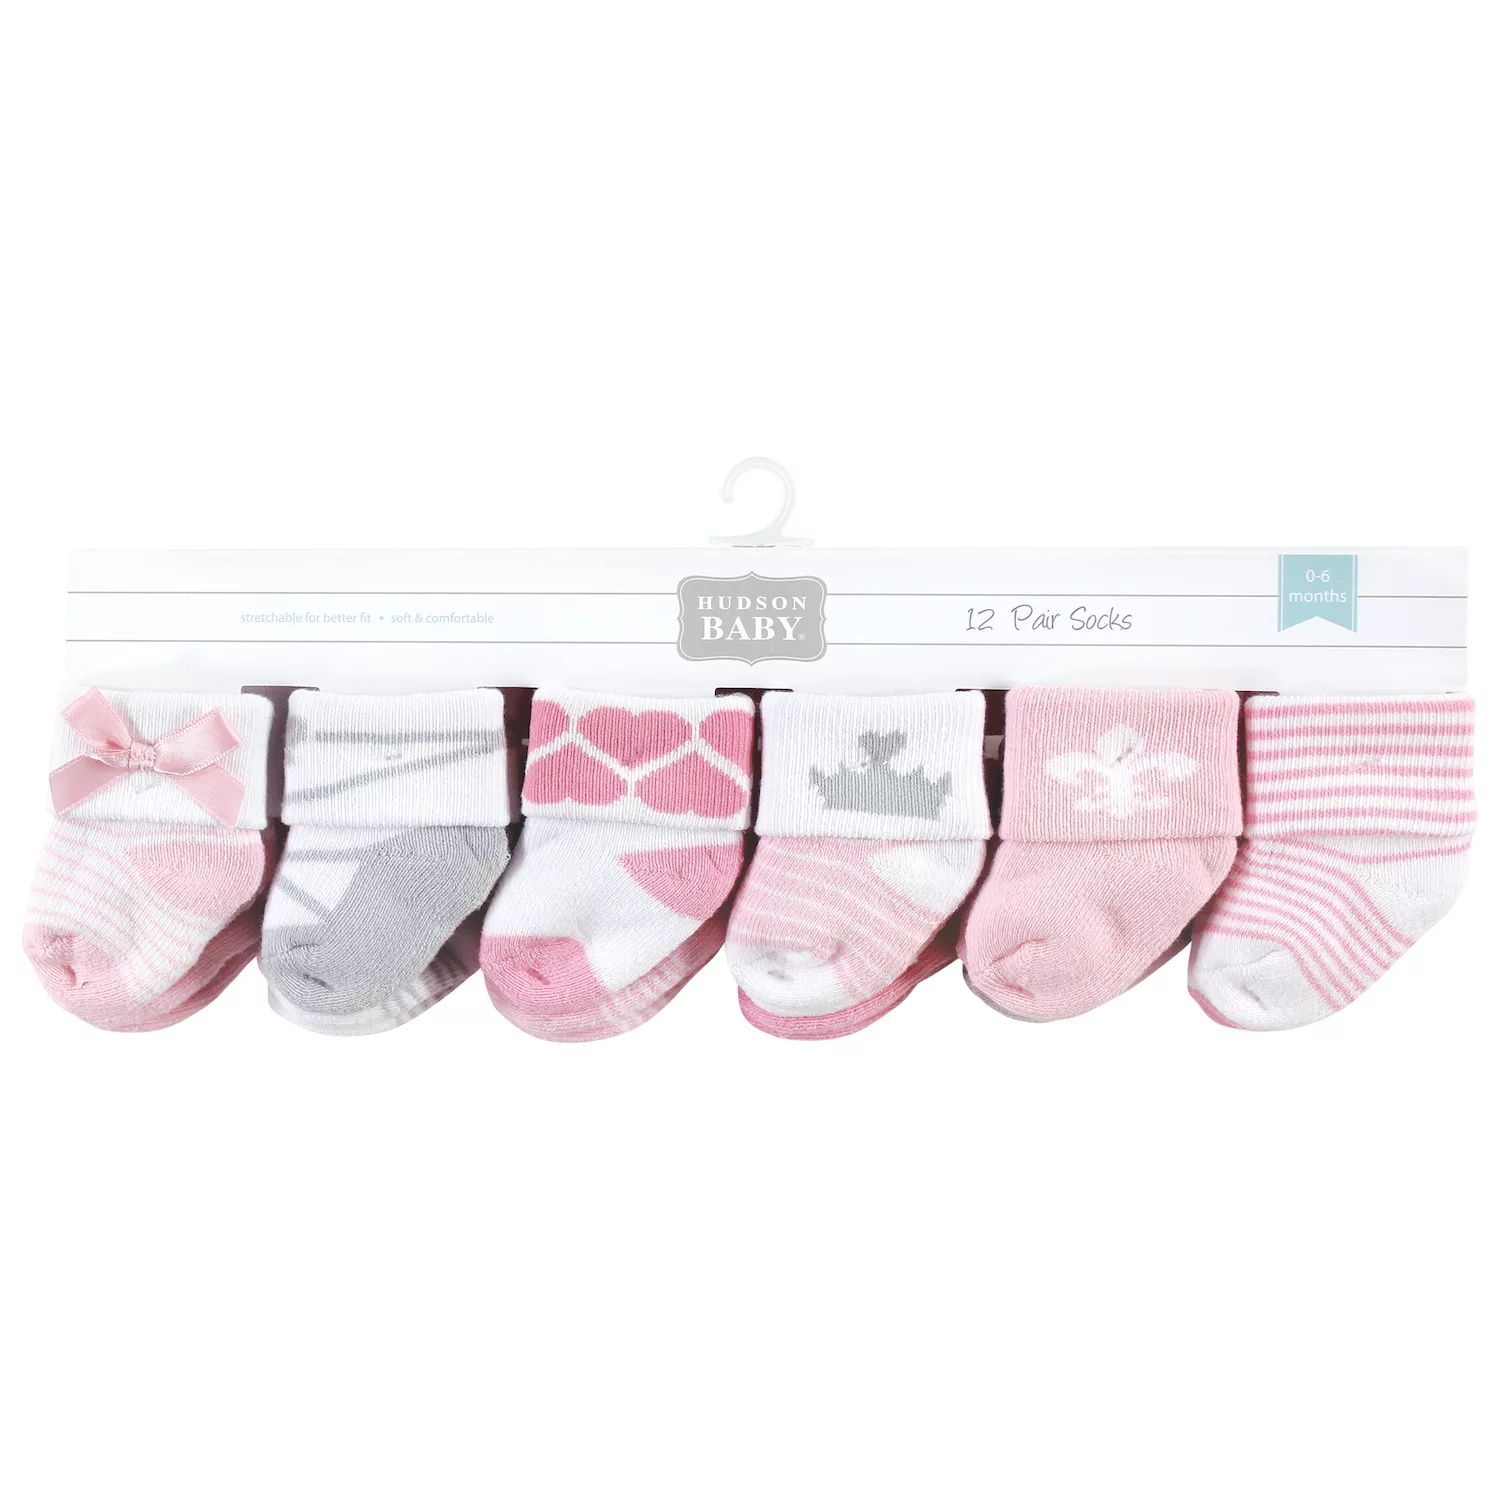 Хлопковые носки Hudson для новорожденных девочек и махровые носки, королевский цвет, 12 шт. Hudson Baby